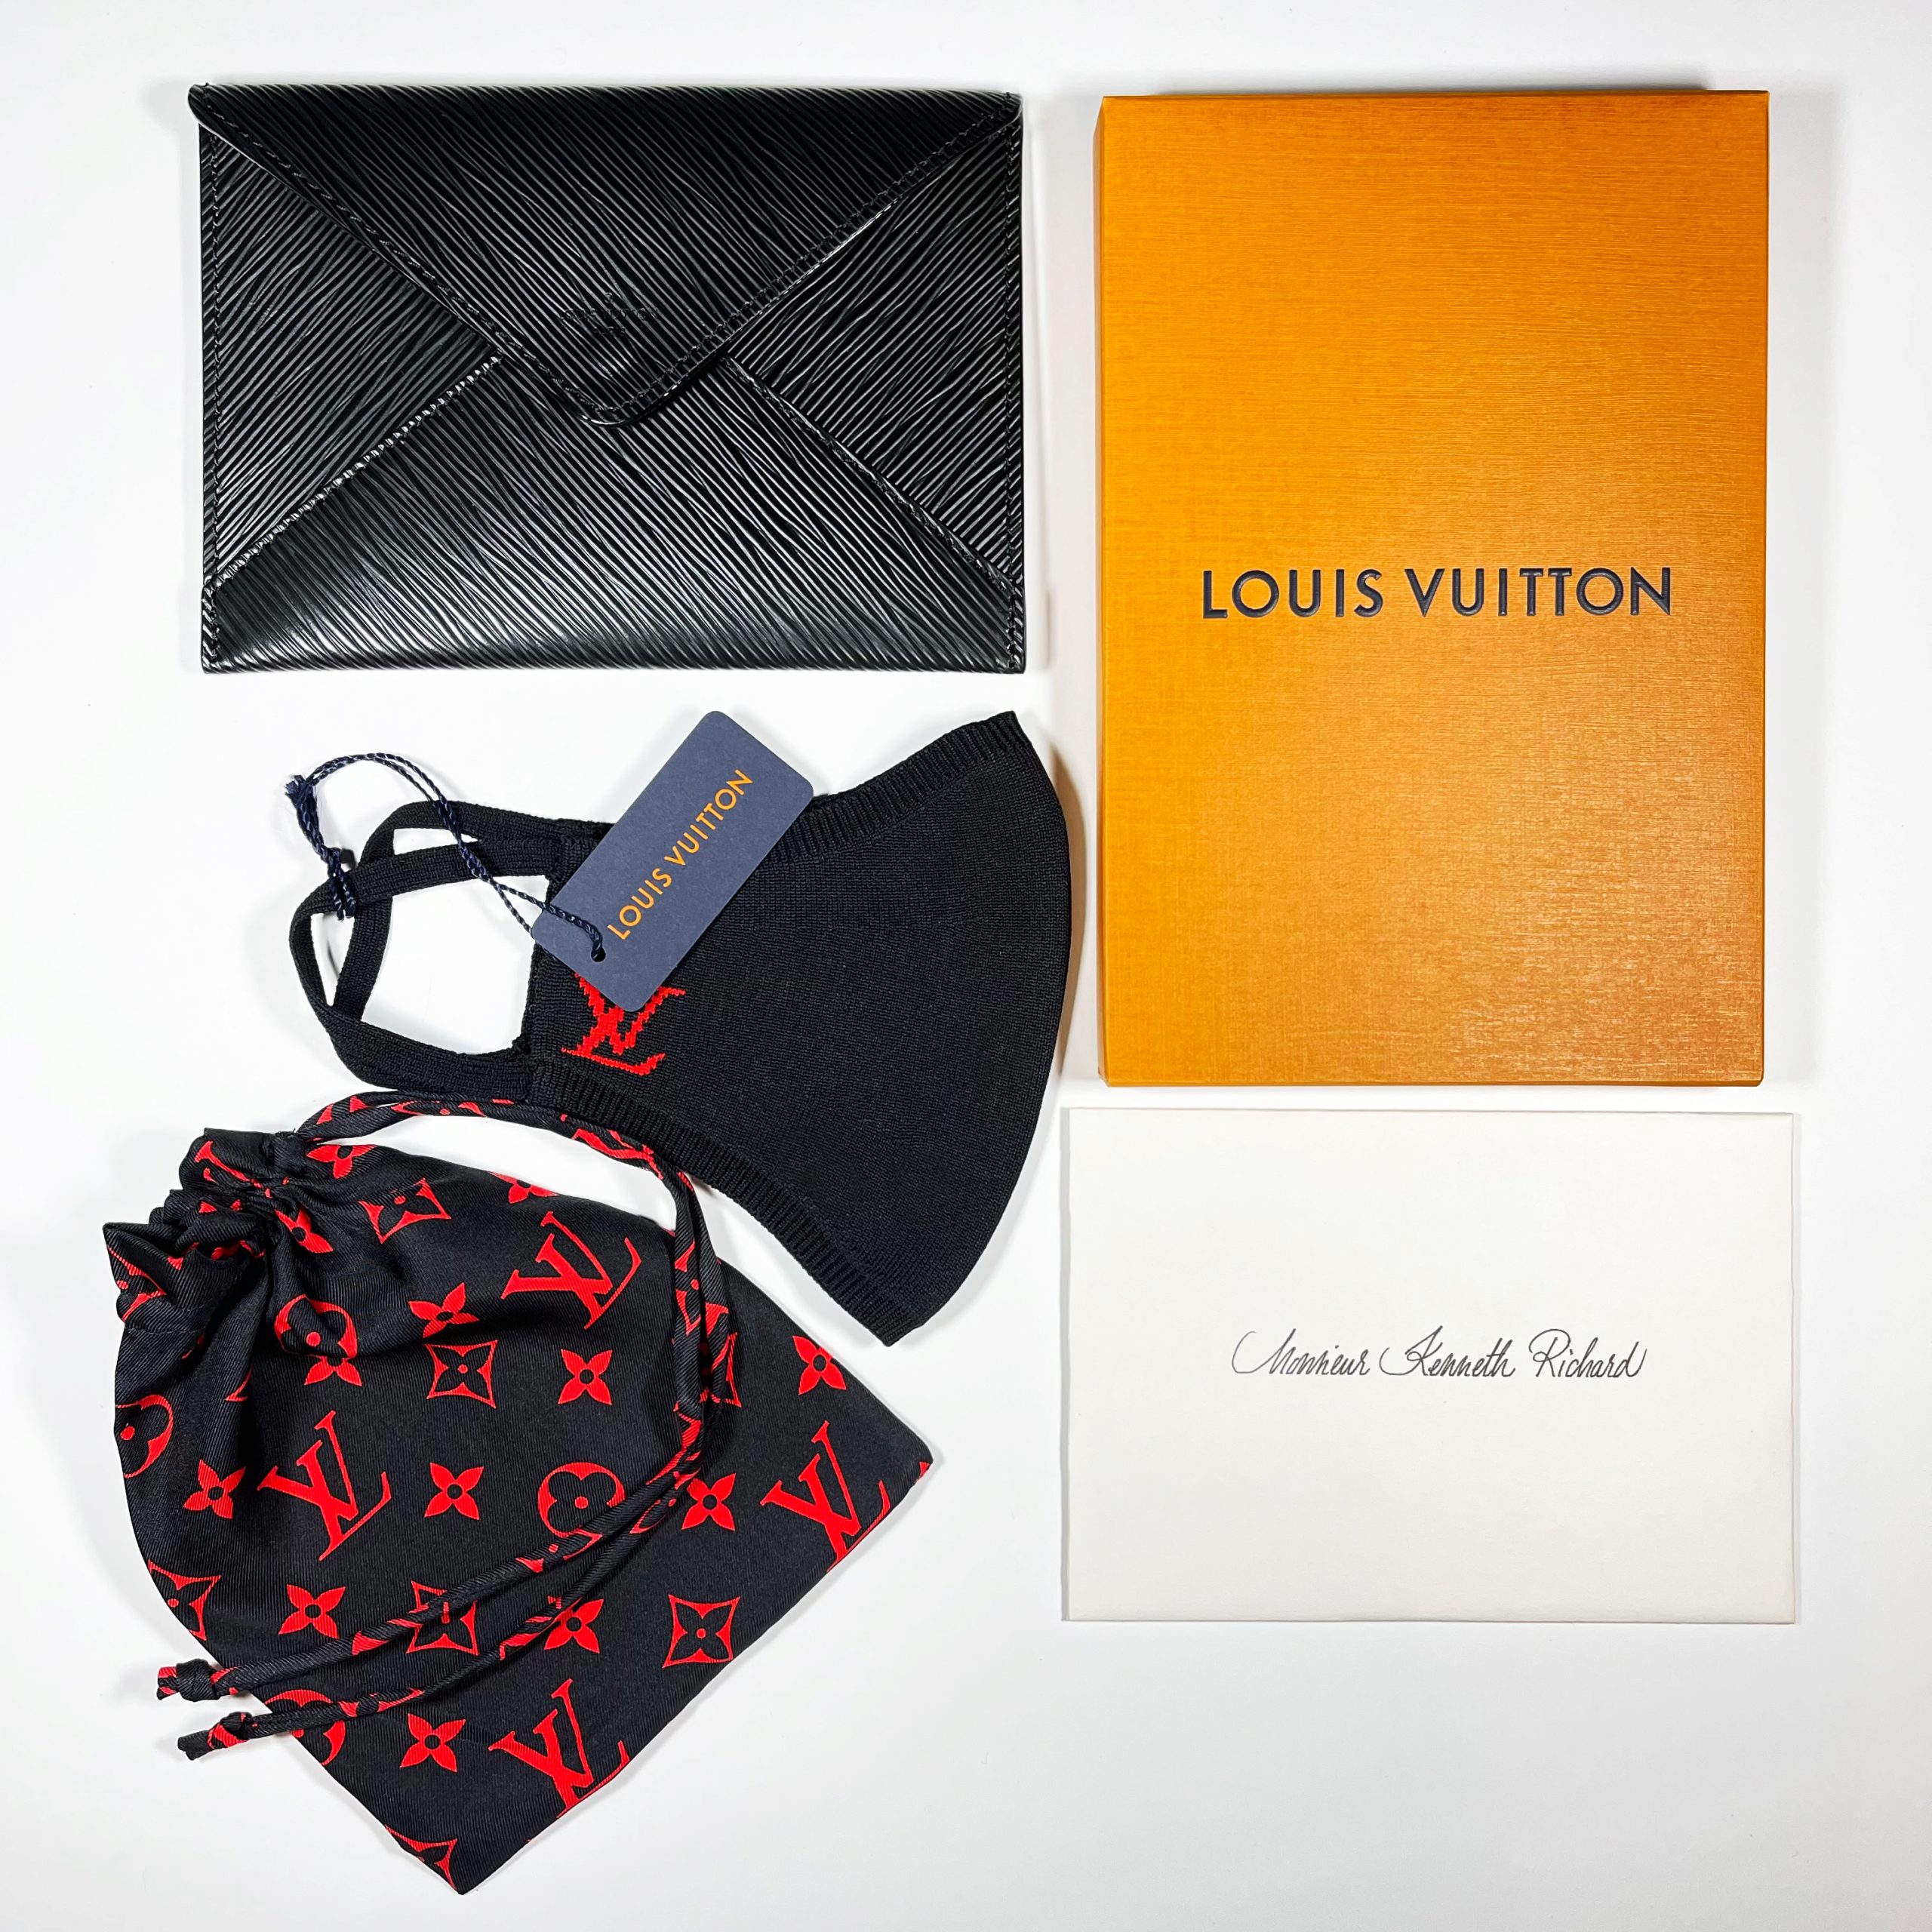 Louis Vuitton invitation  Fashion show invitation, Card design